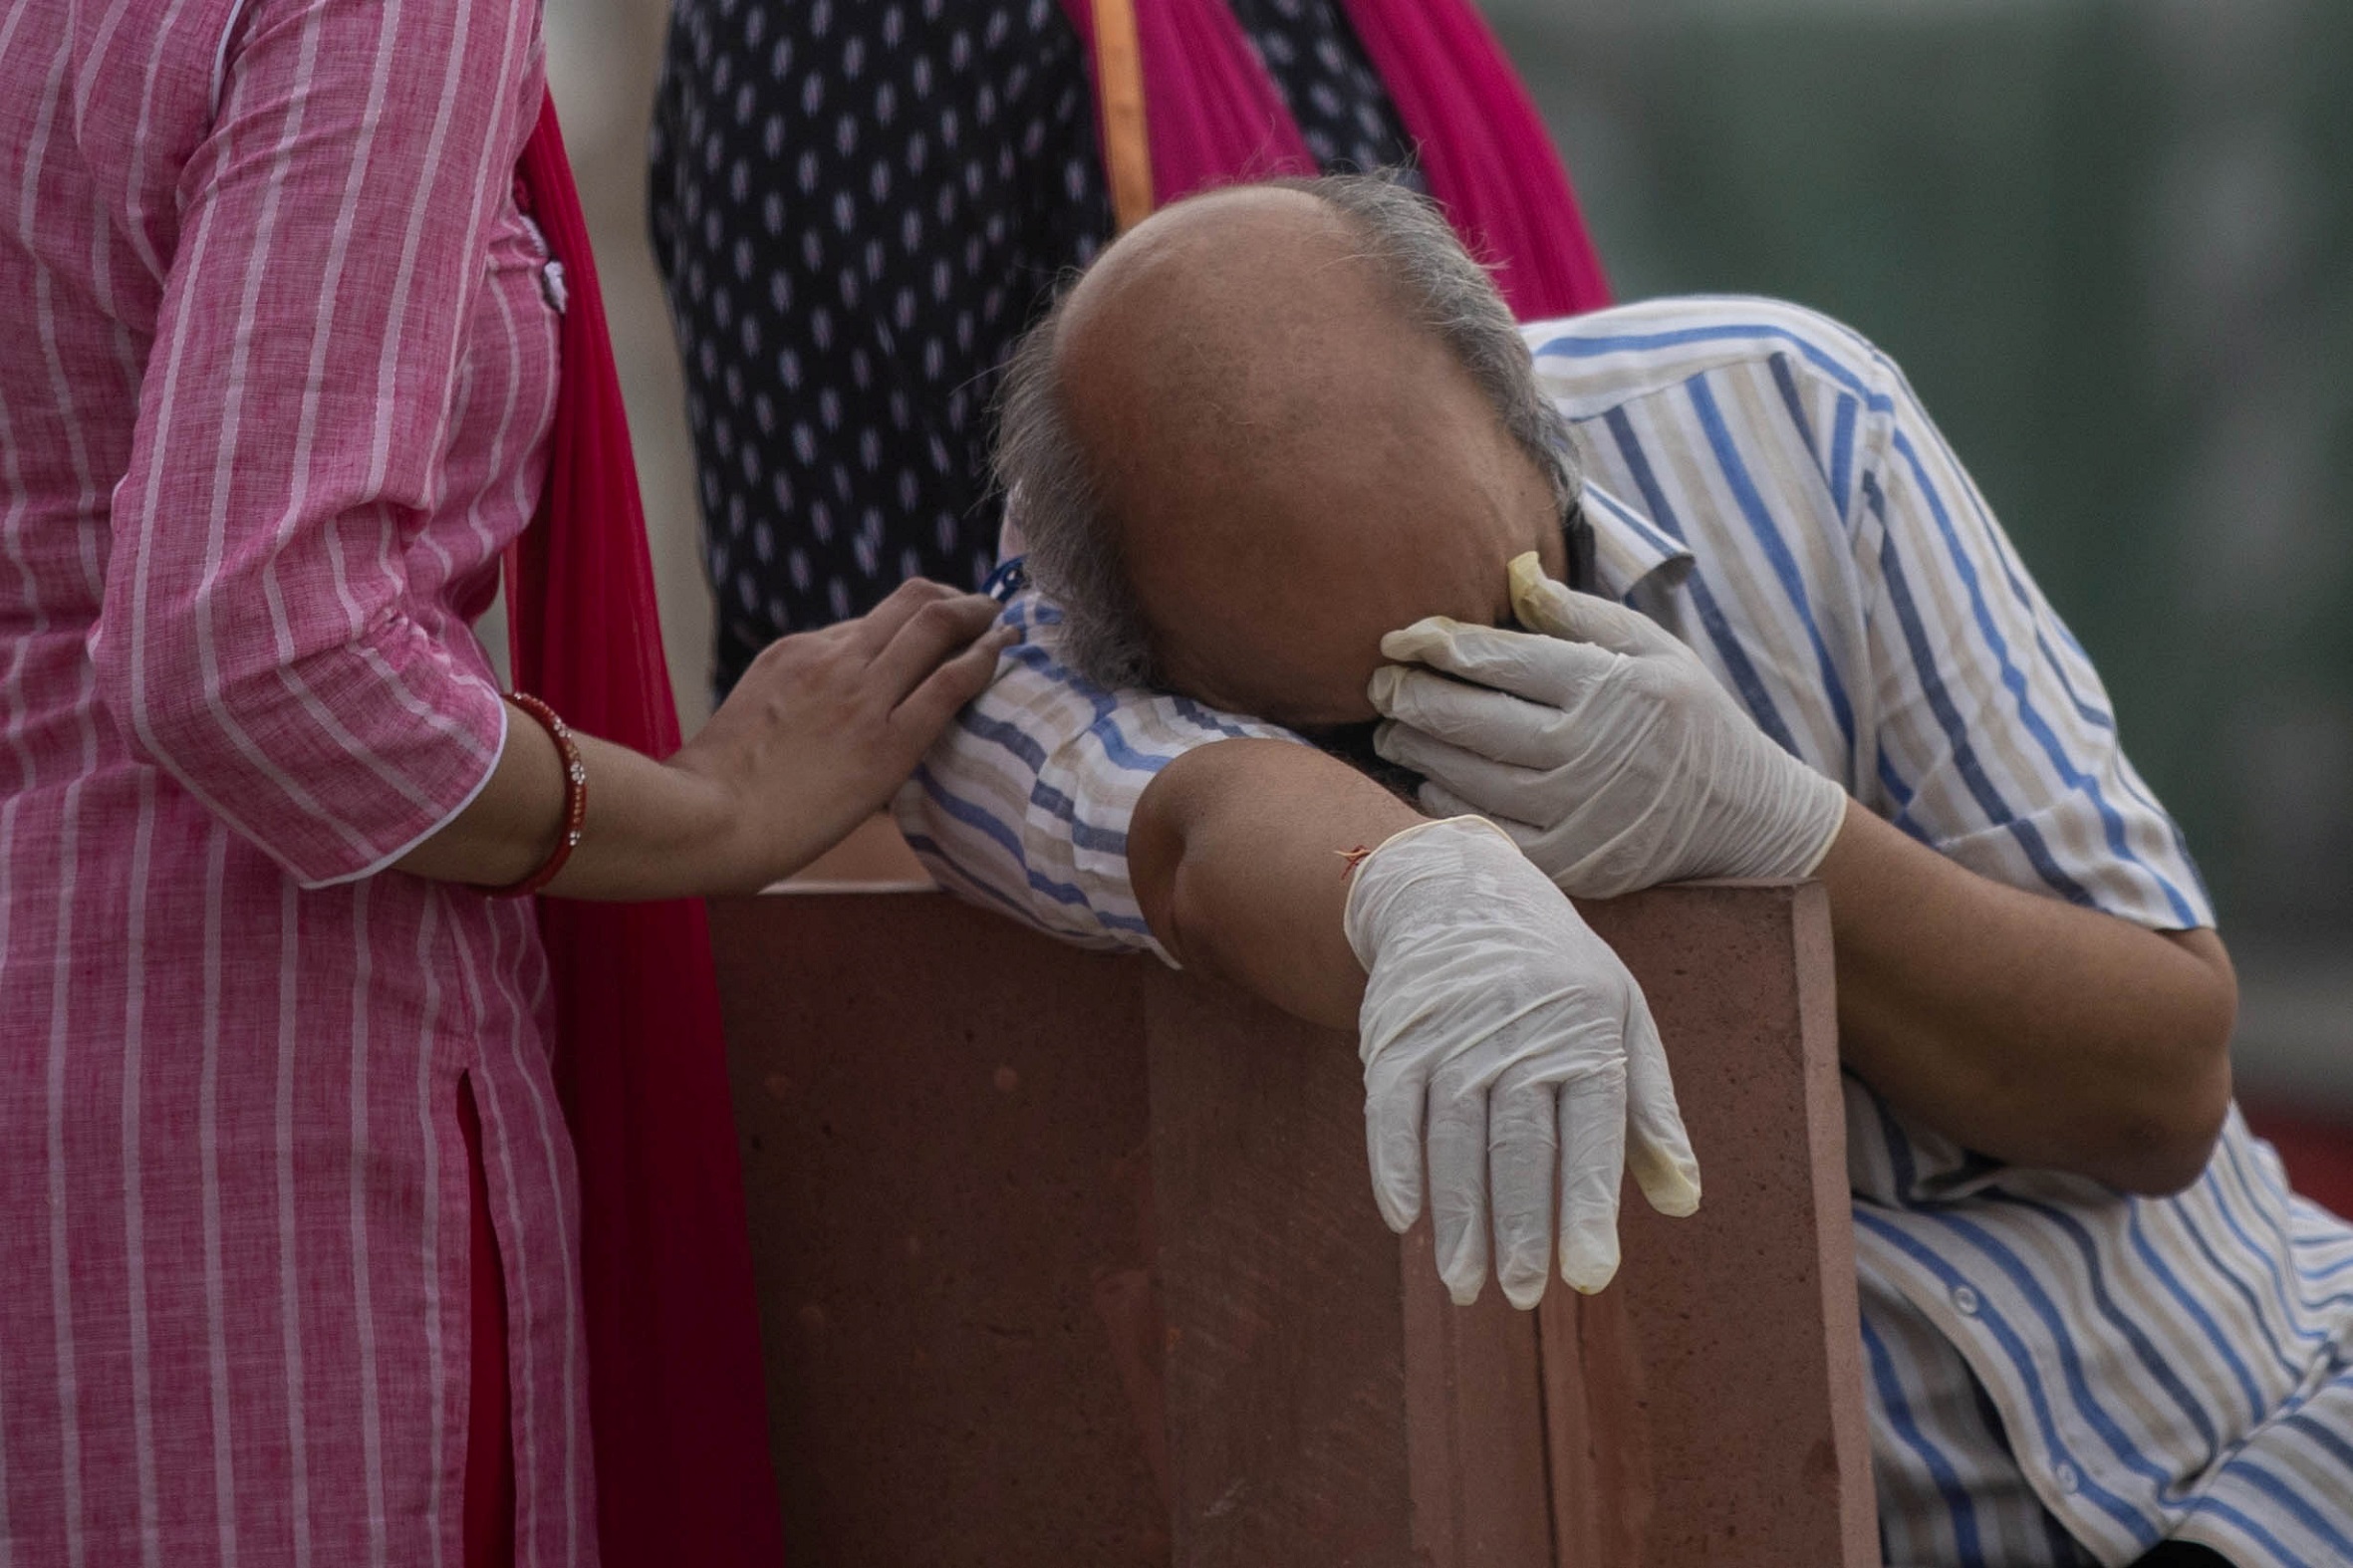 حزن يُخيم على رجل قبل حرق جثمان قريب له توفي بعد إصابته بفيروس كورونا على ضفاف نهر الغانج في ولاية أوتار براديش الشمالية في الهند. 6 أيار/مايو 2021. (رويترز)